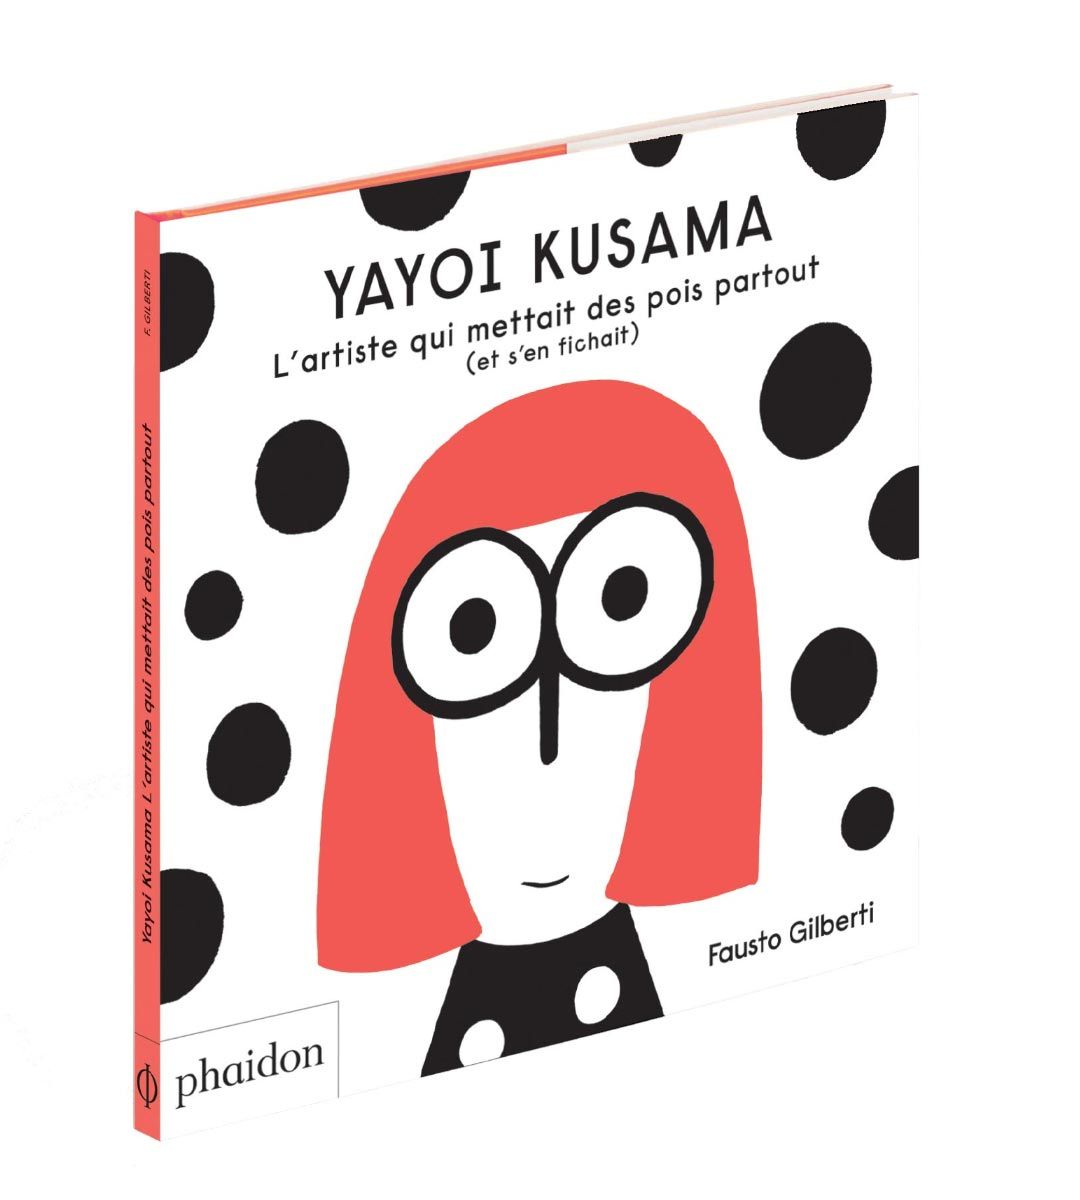 Yayoi Kusama - El artista que puso a Pea en todas partes (y allí)